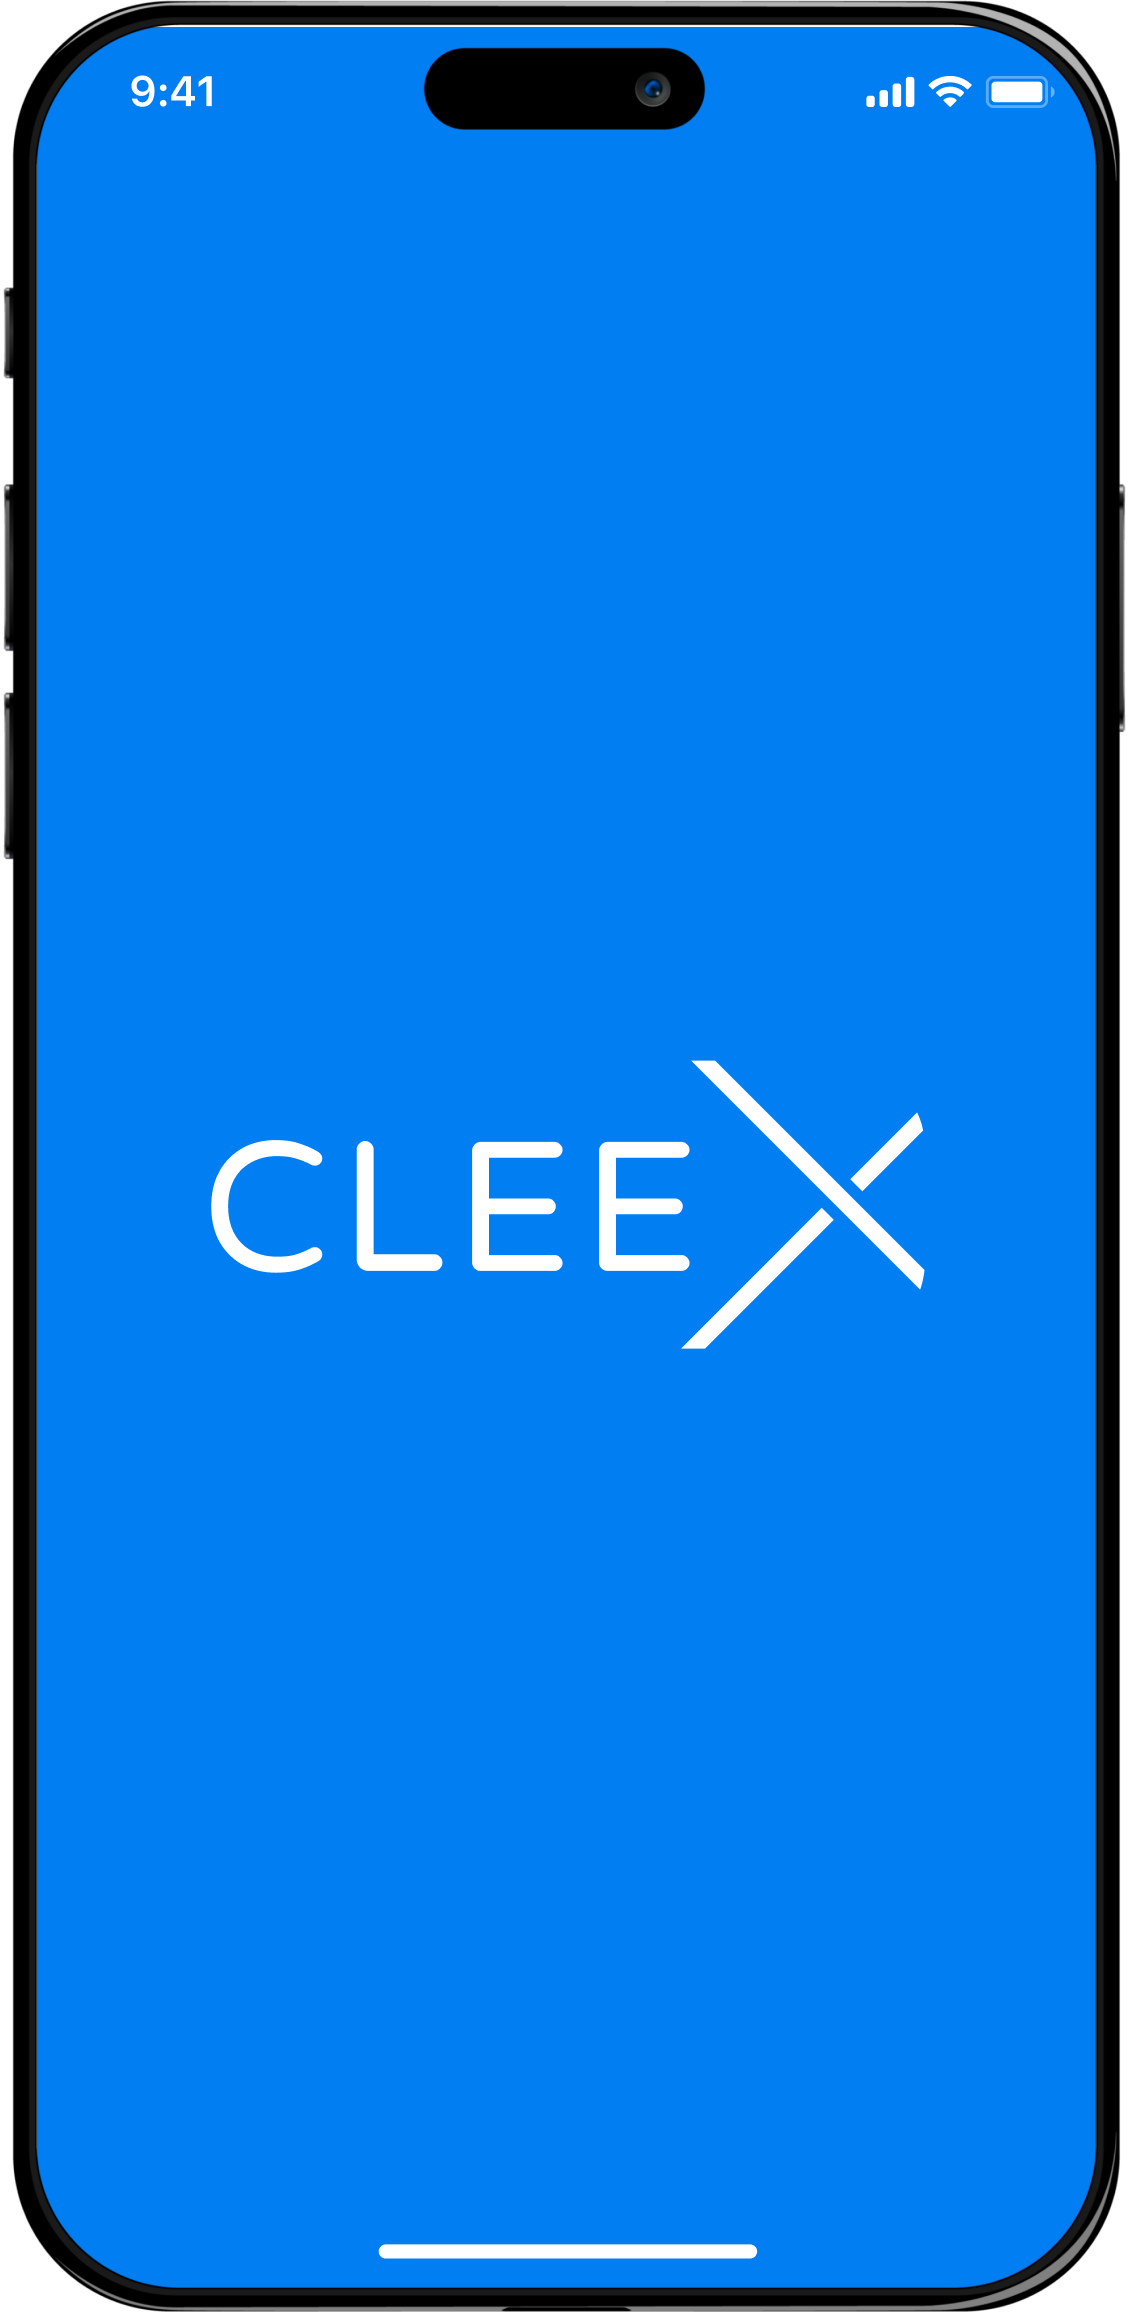  Приветственный экран мобильного приложения CLEEX.